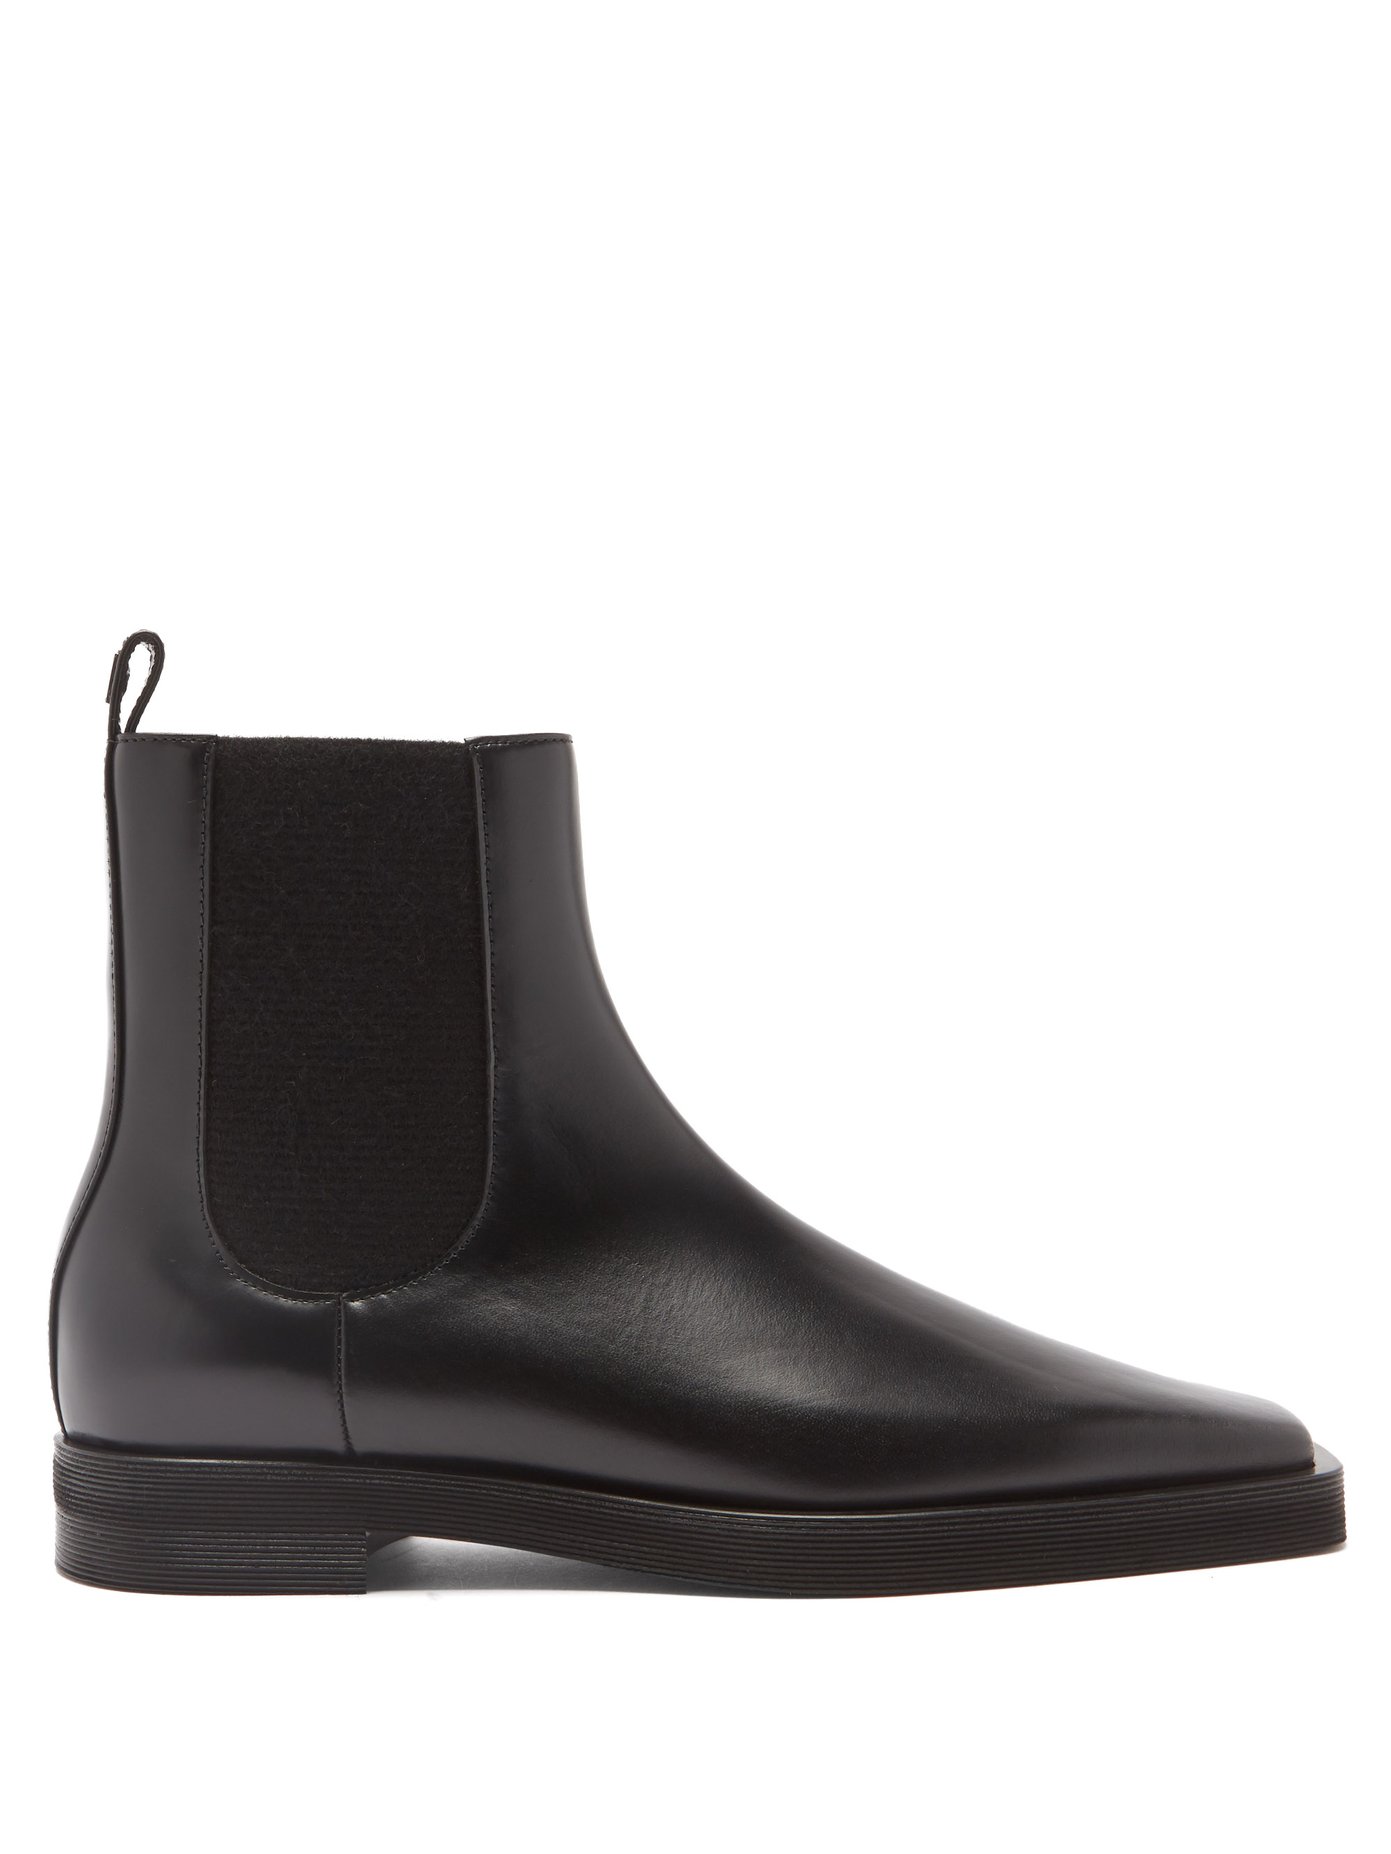 토템 첼시 부츠 Toteme Black Square-toe leather Chelsea boots